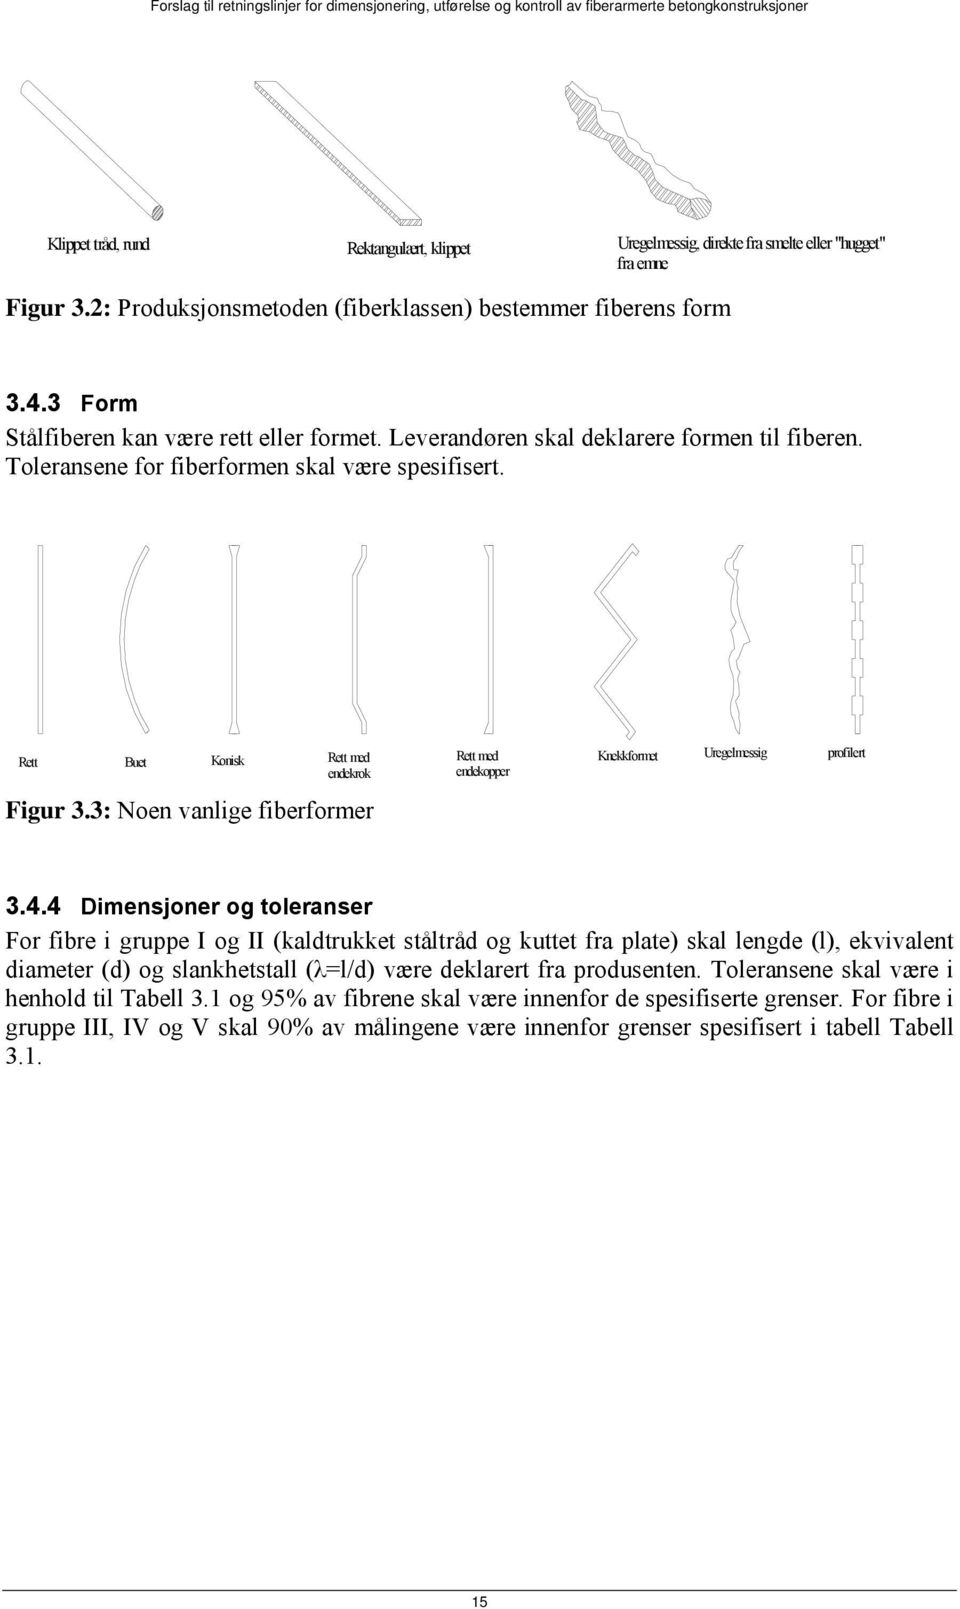 Rett Buet Konisk Rett med Rett med endekrok endekopper Figur 3.3: Noen vanlige fiberformer Knekkformet Uregelmessig profilert 3.4.